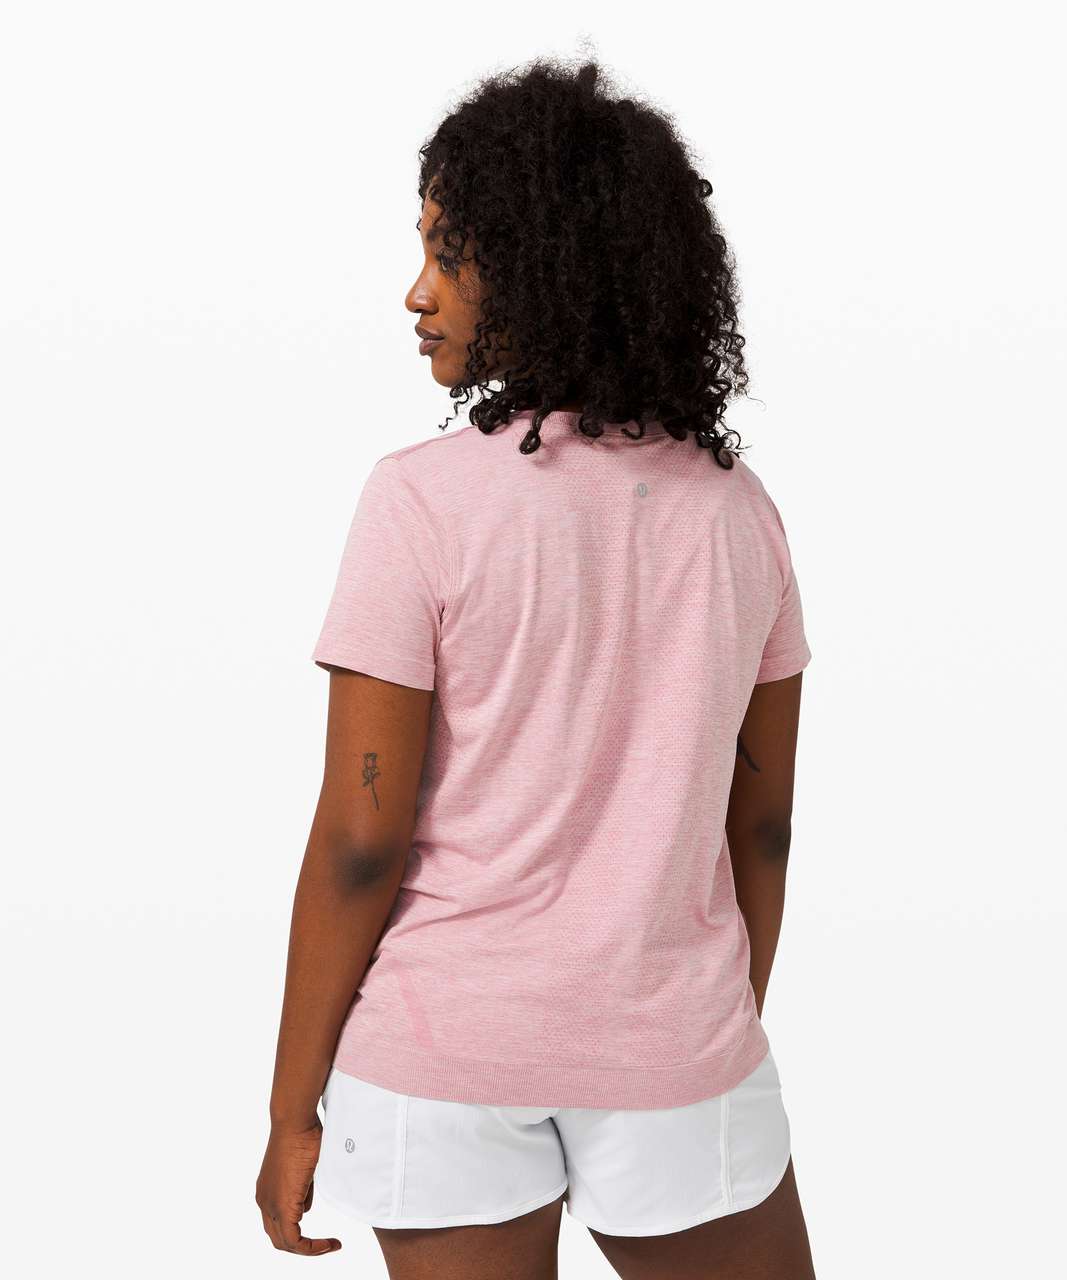 Lululemon Swiftly Relaxed Short Sleeve - Pink Taupe / White